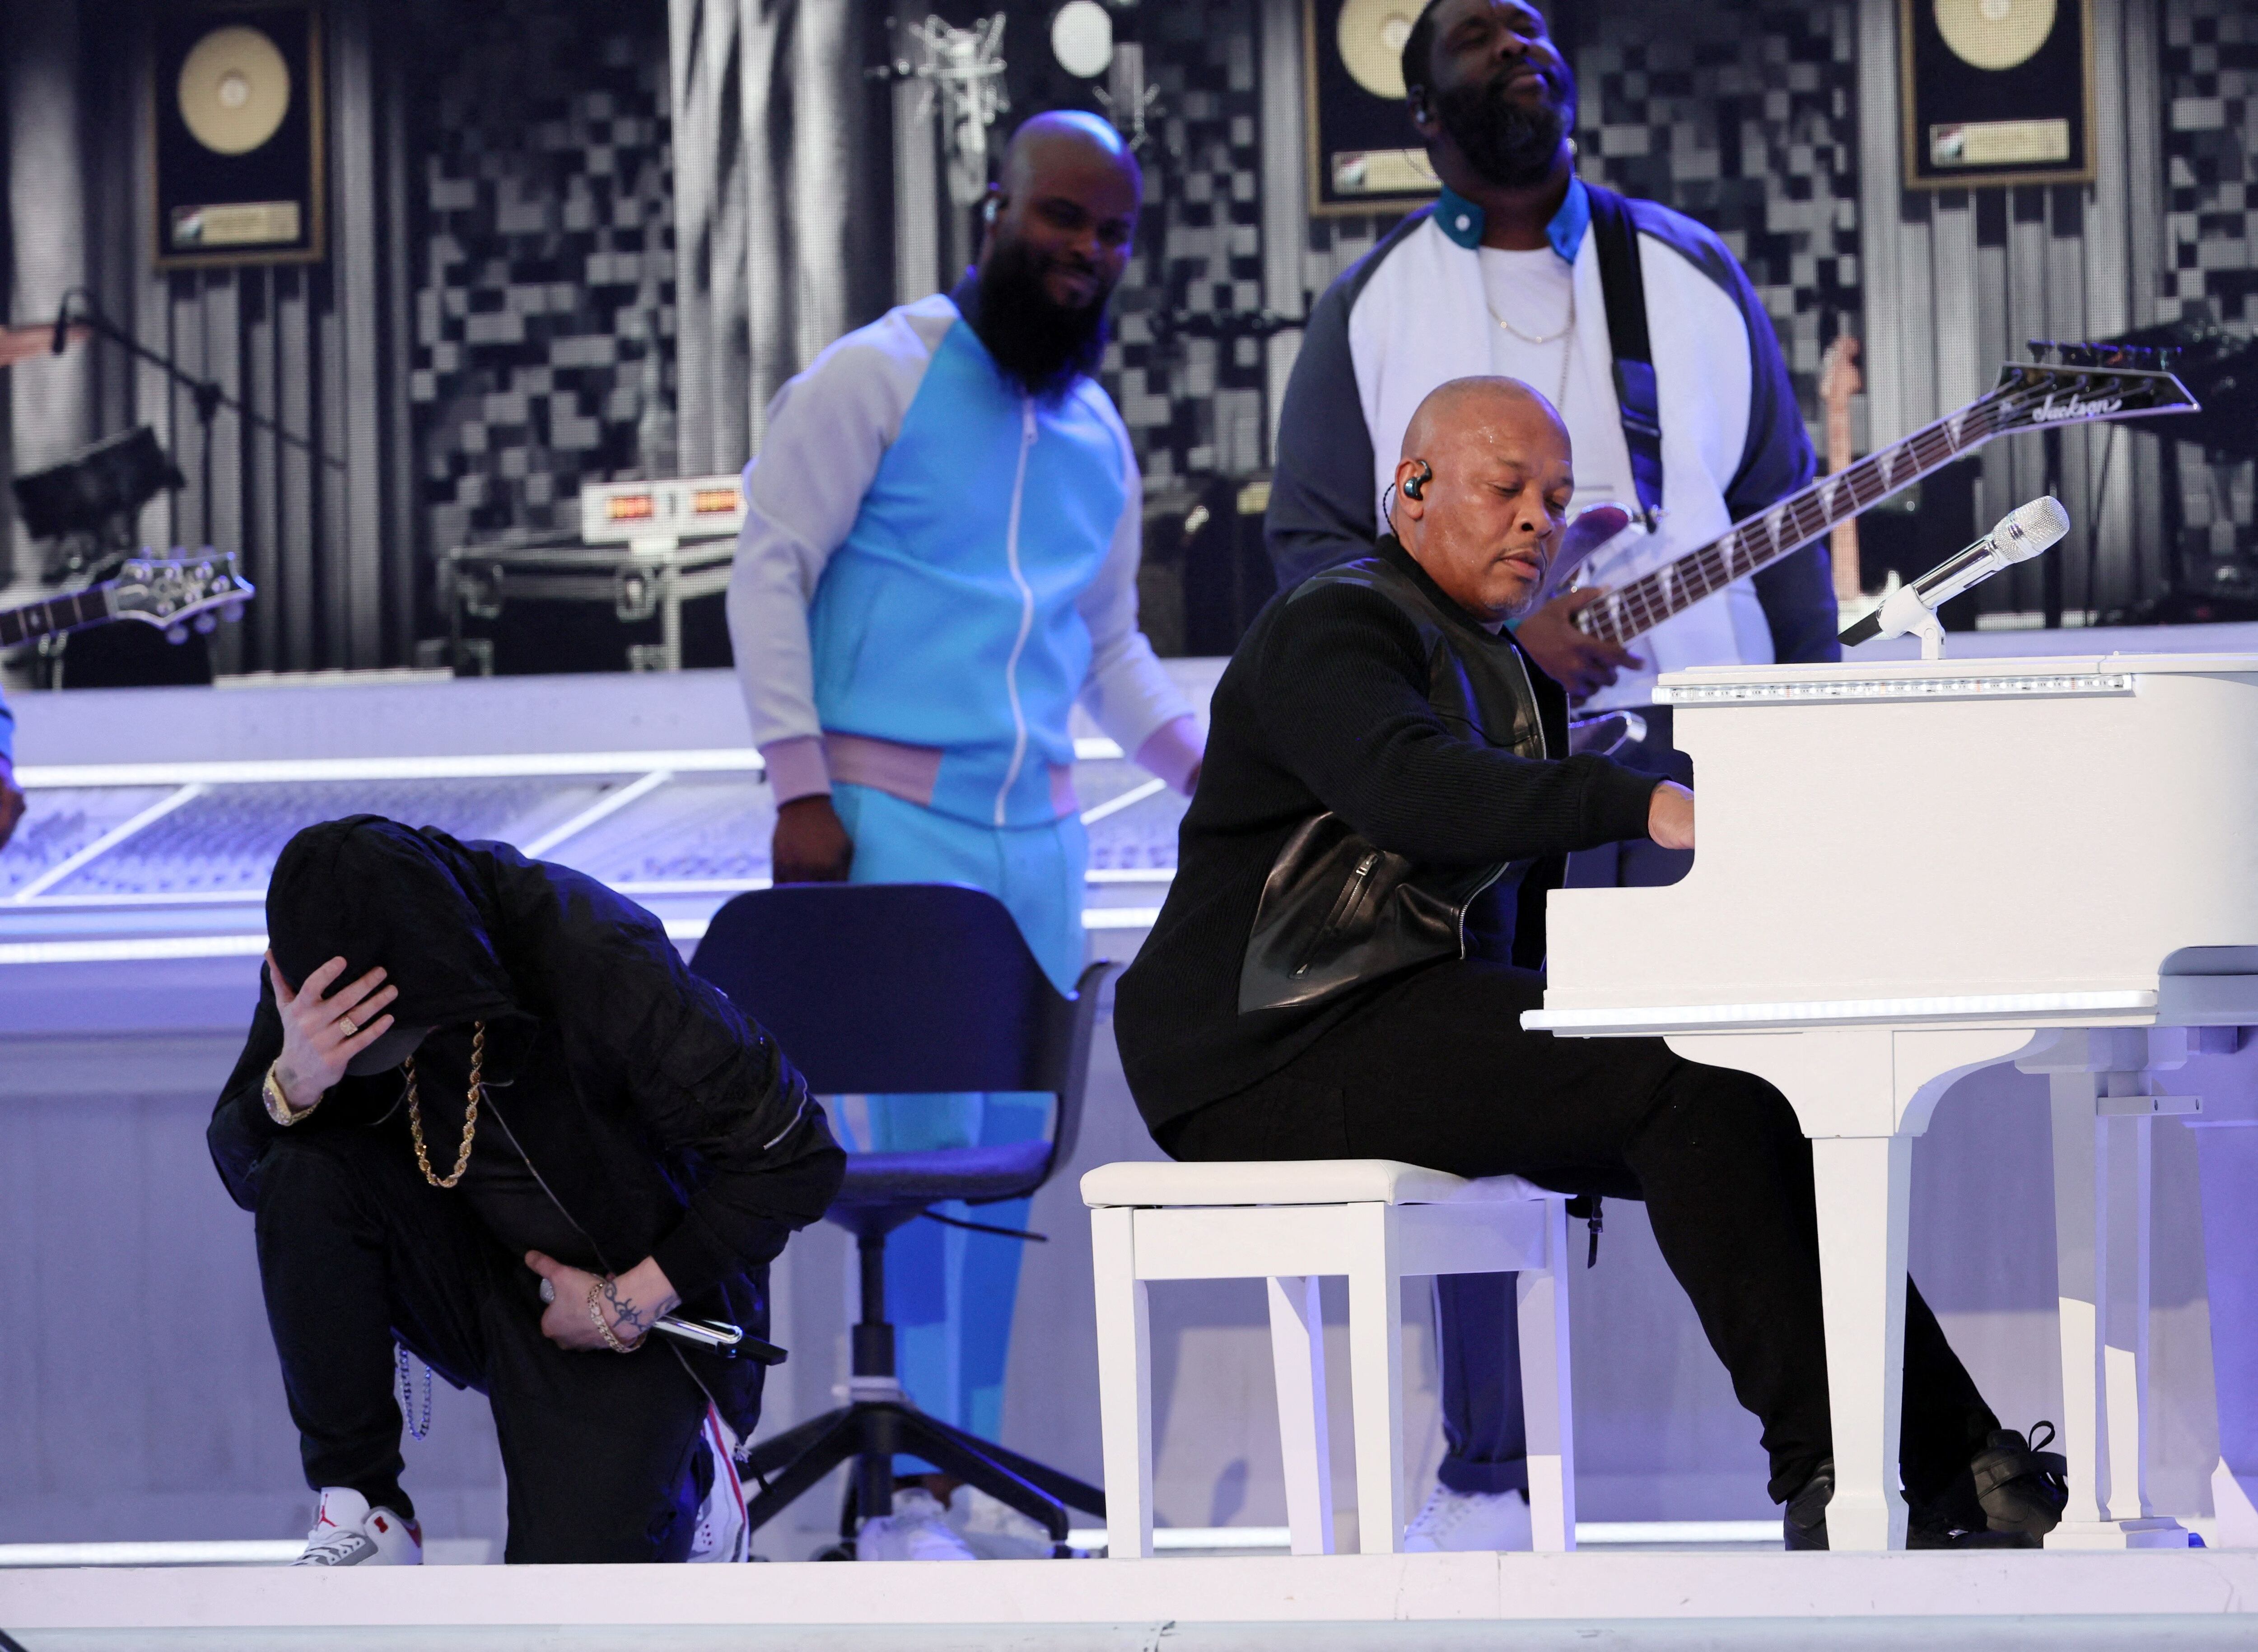 El momento en el que Eminem hincó su rodilla en el escenario (Reuters)